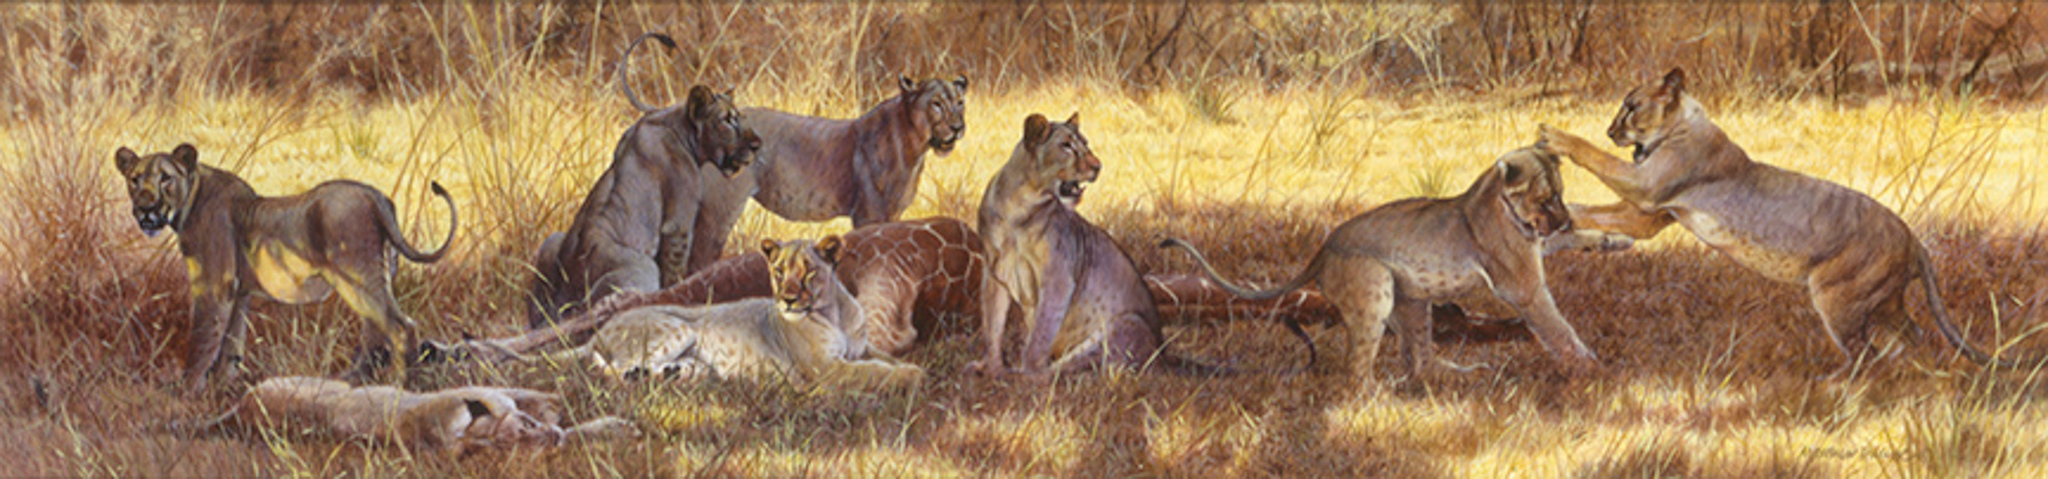 MH – Lions Killed Giraffe © Matthew Hillier